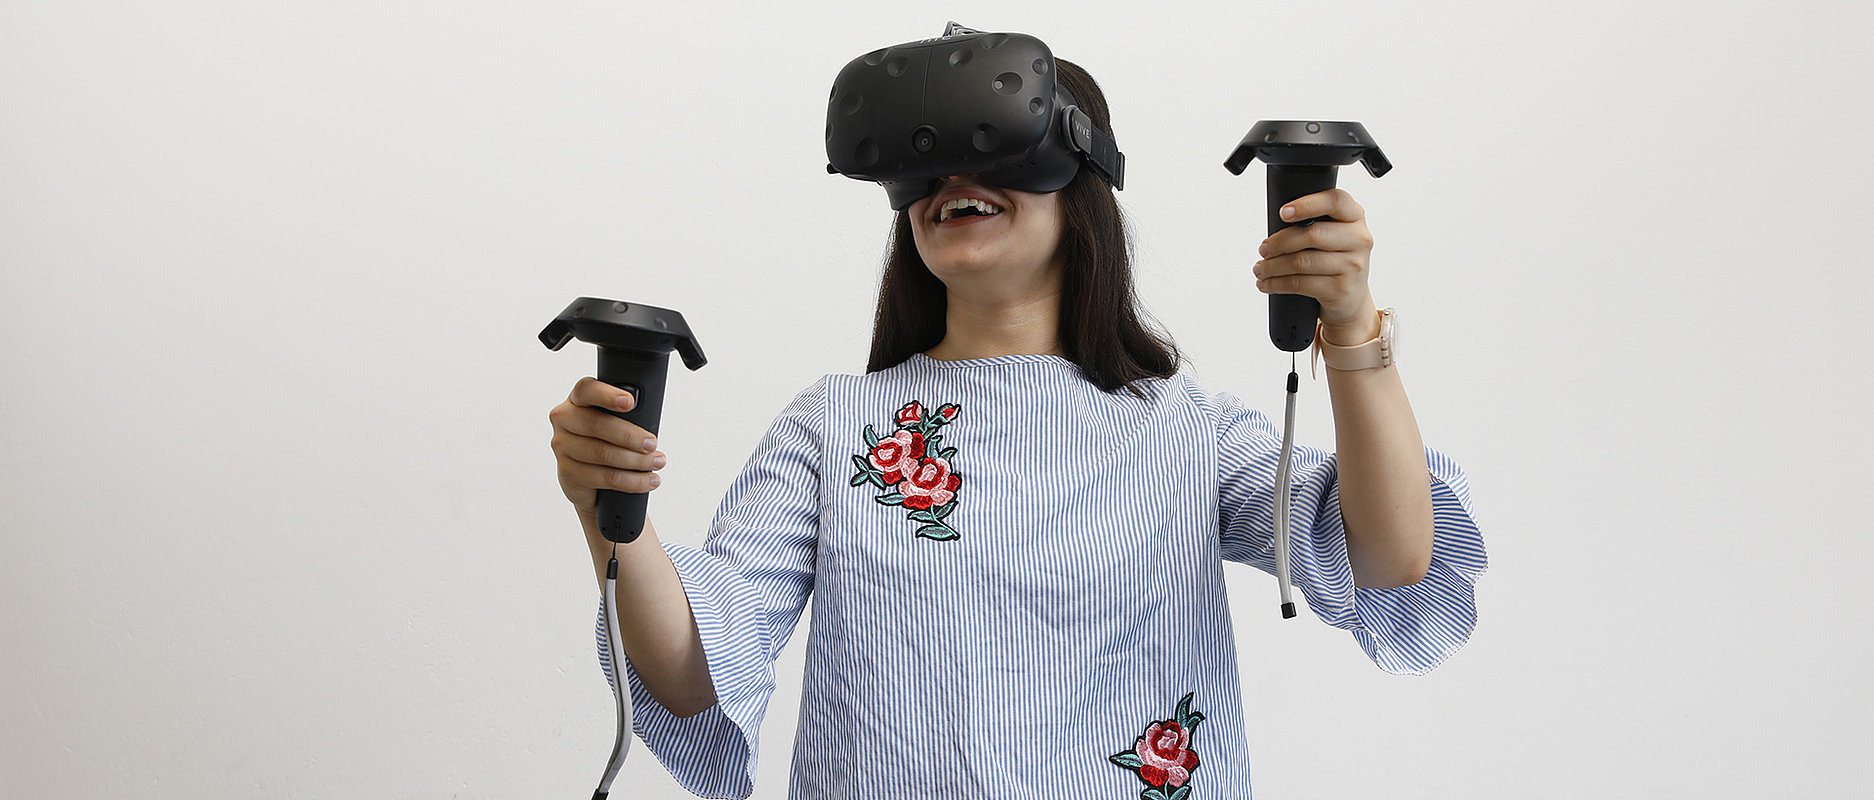 Etudiante Réalité augmentée - réalité virtuelle